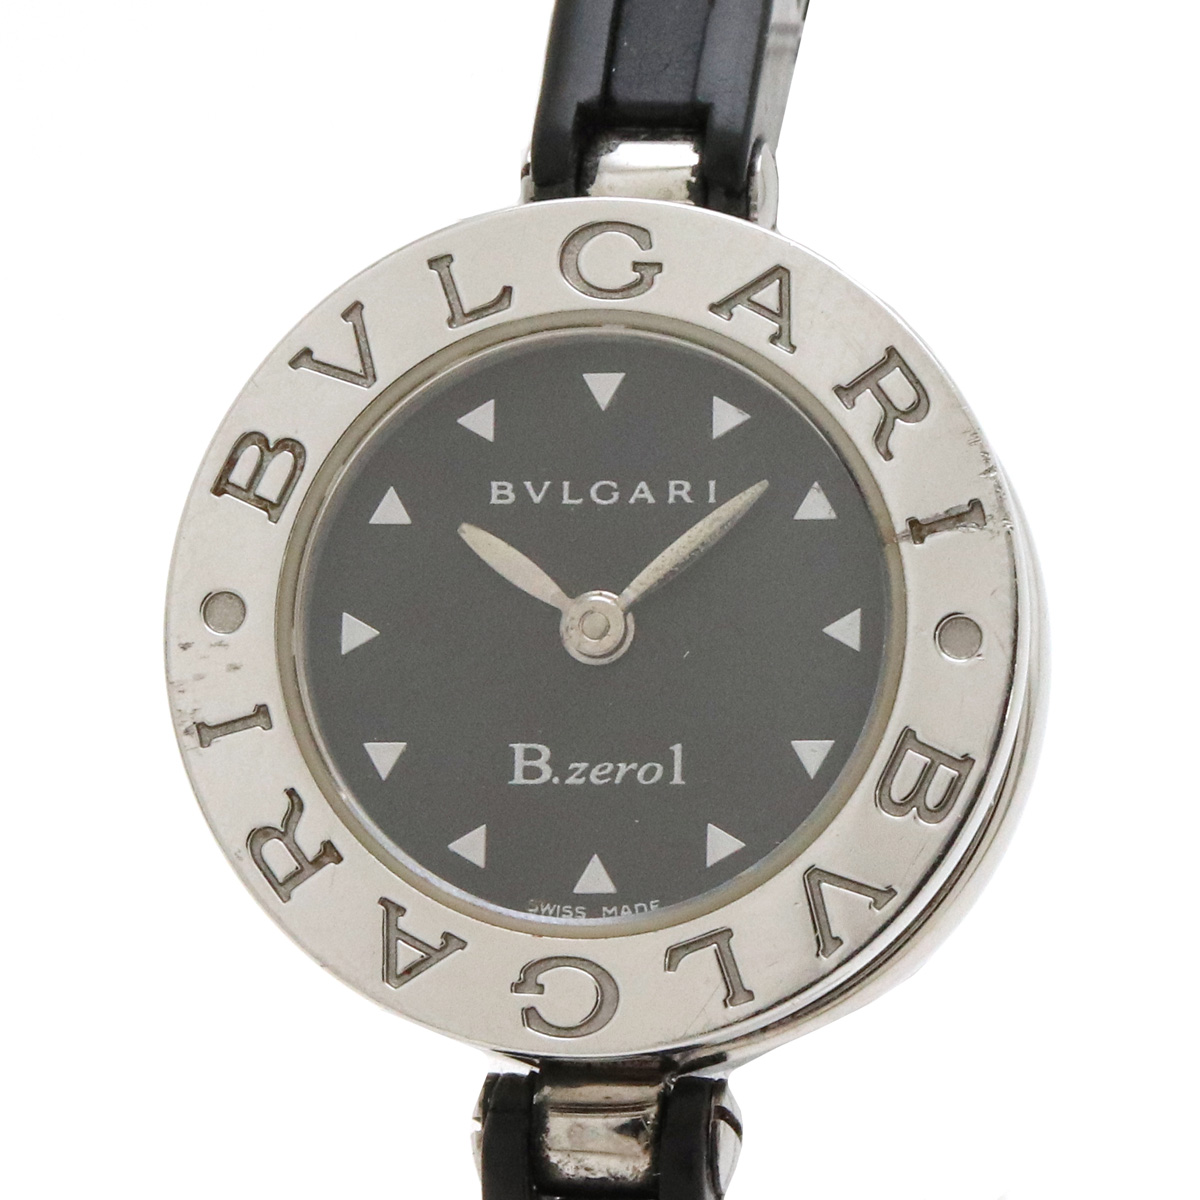 【楽天市場】【ウォッチ】BVLGARI ブルガリ B.zero1 B-zero1 ビーゼロワン ブラック文字盤 ラバーベルト Sサイズ